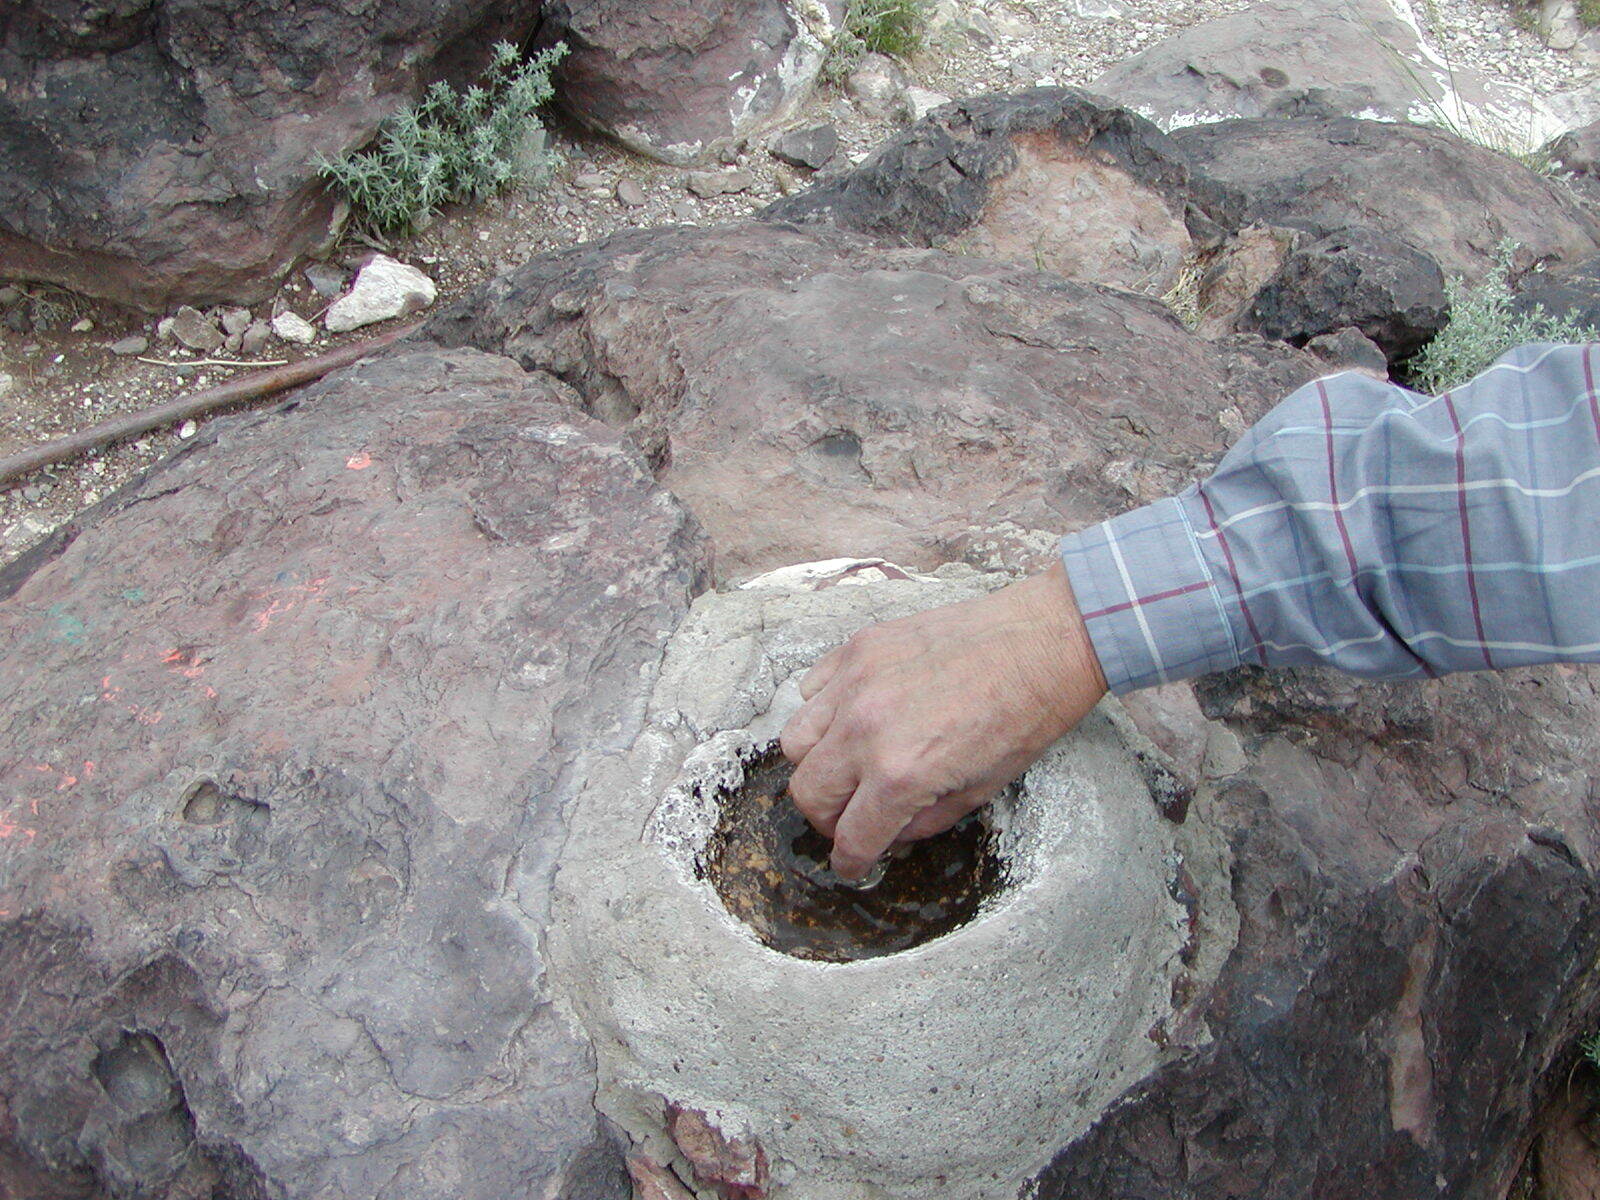 A sacred water fixture atop El Cerro de Tome in Valencia County, NM